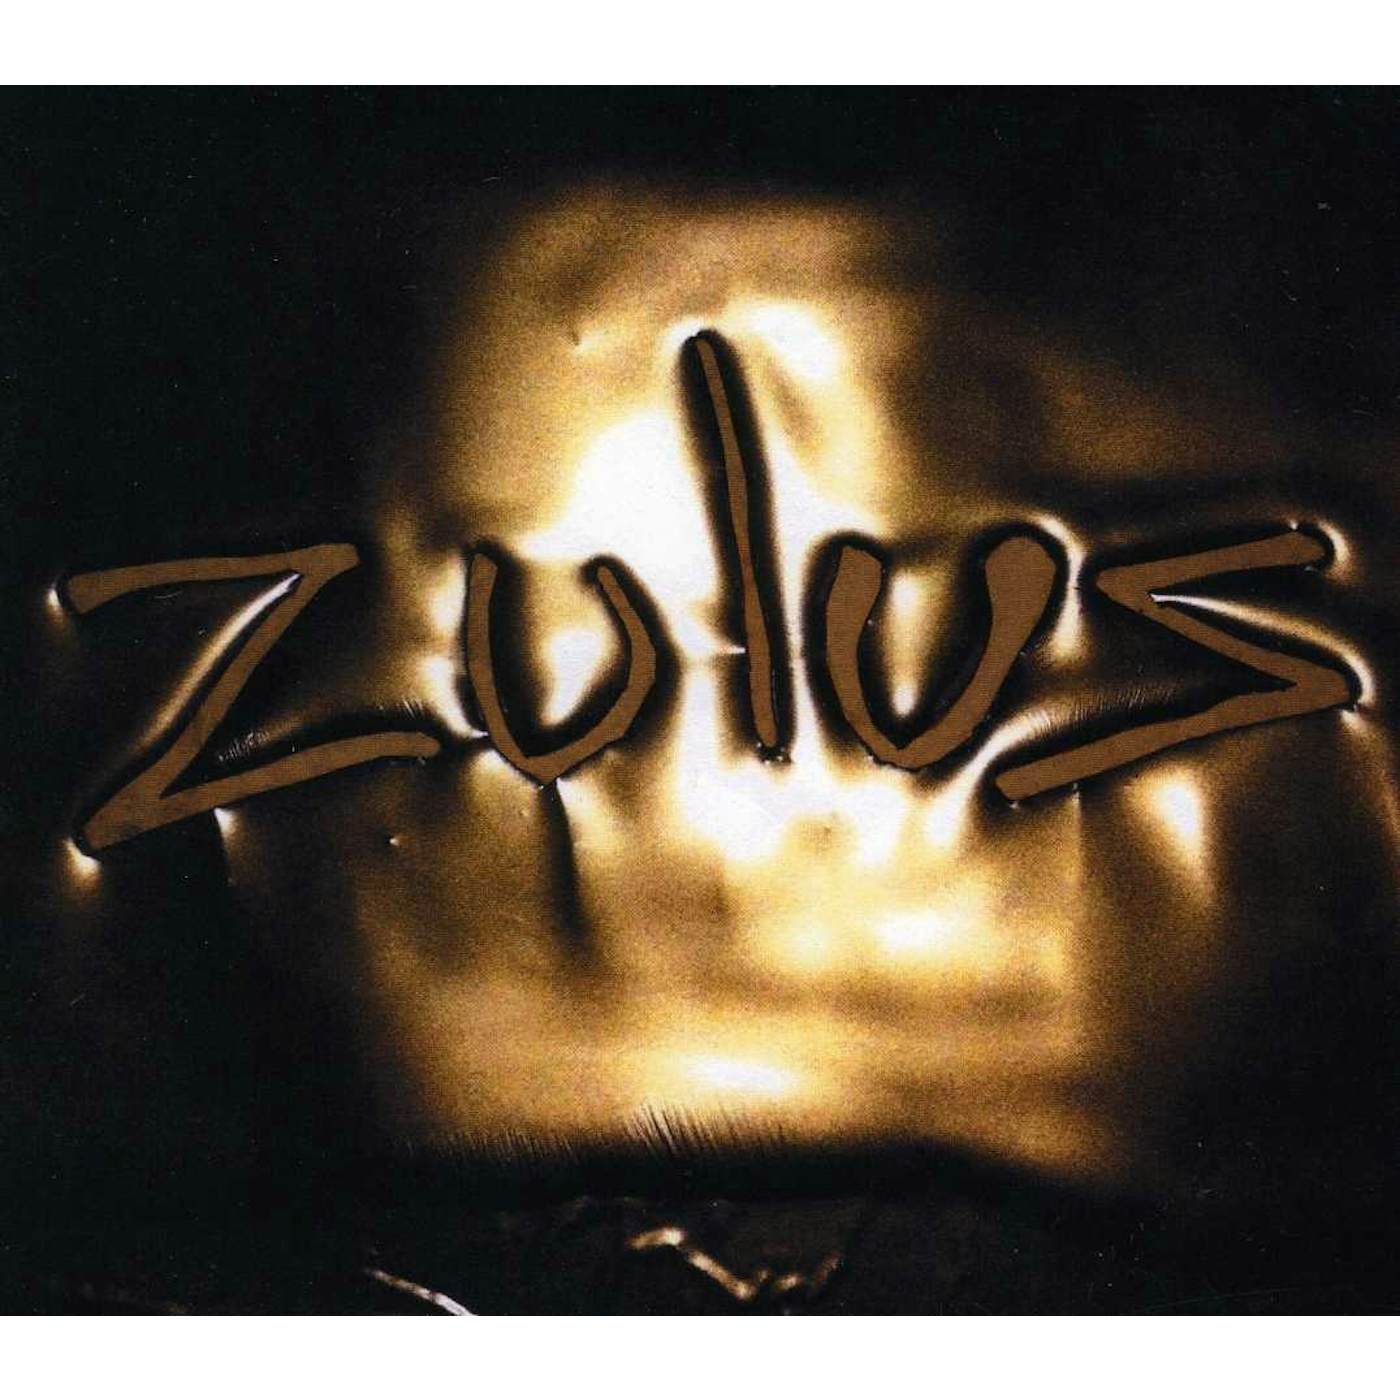 ZULUS CD